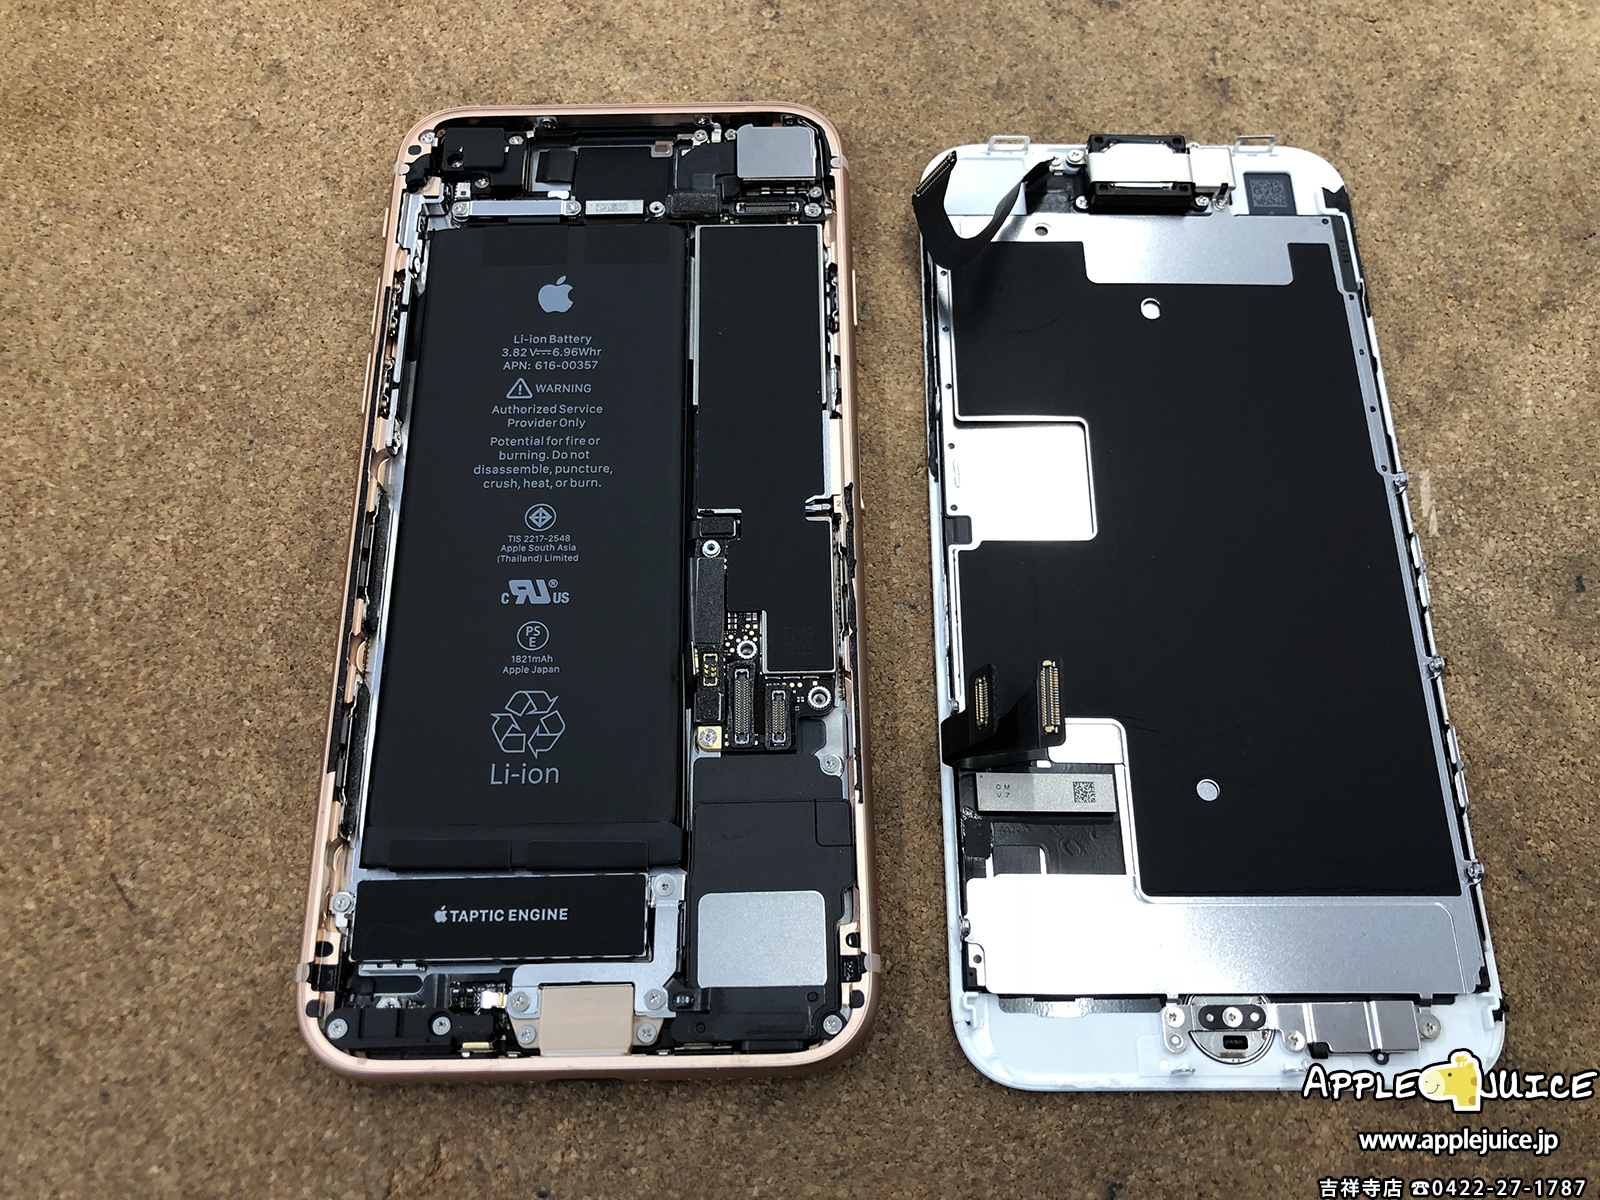 急に起動しなくなったiphone8も基板修理で復旧可能です 基板修理レポート例 Iphone Ipad Ipod Mac修理 データ復旧 基板修理 Applejuice吉祥寺店